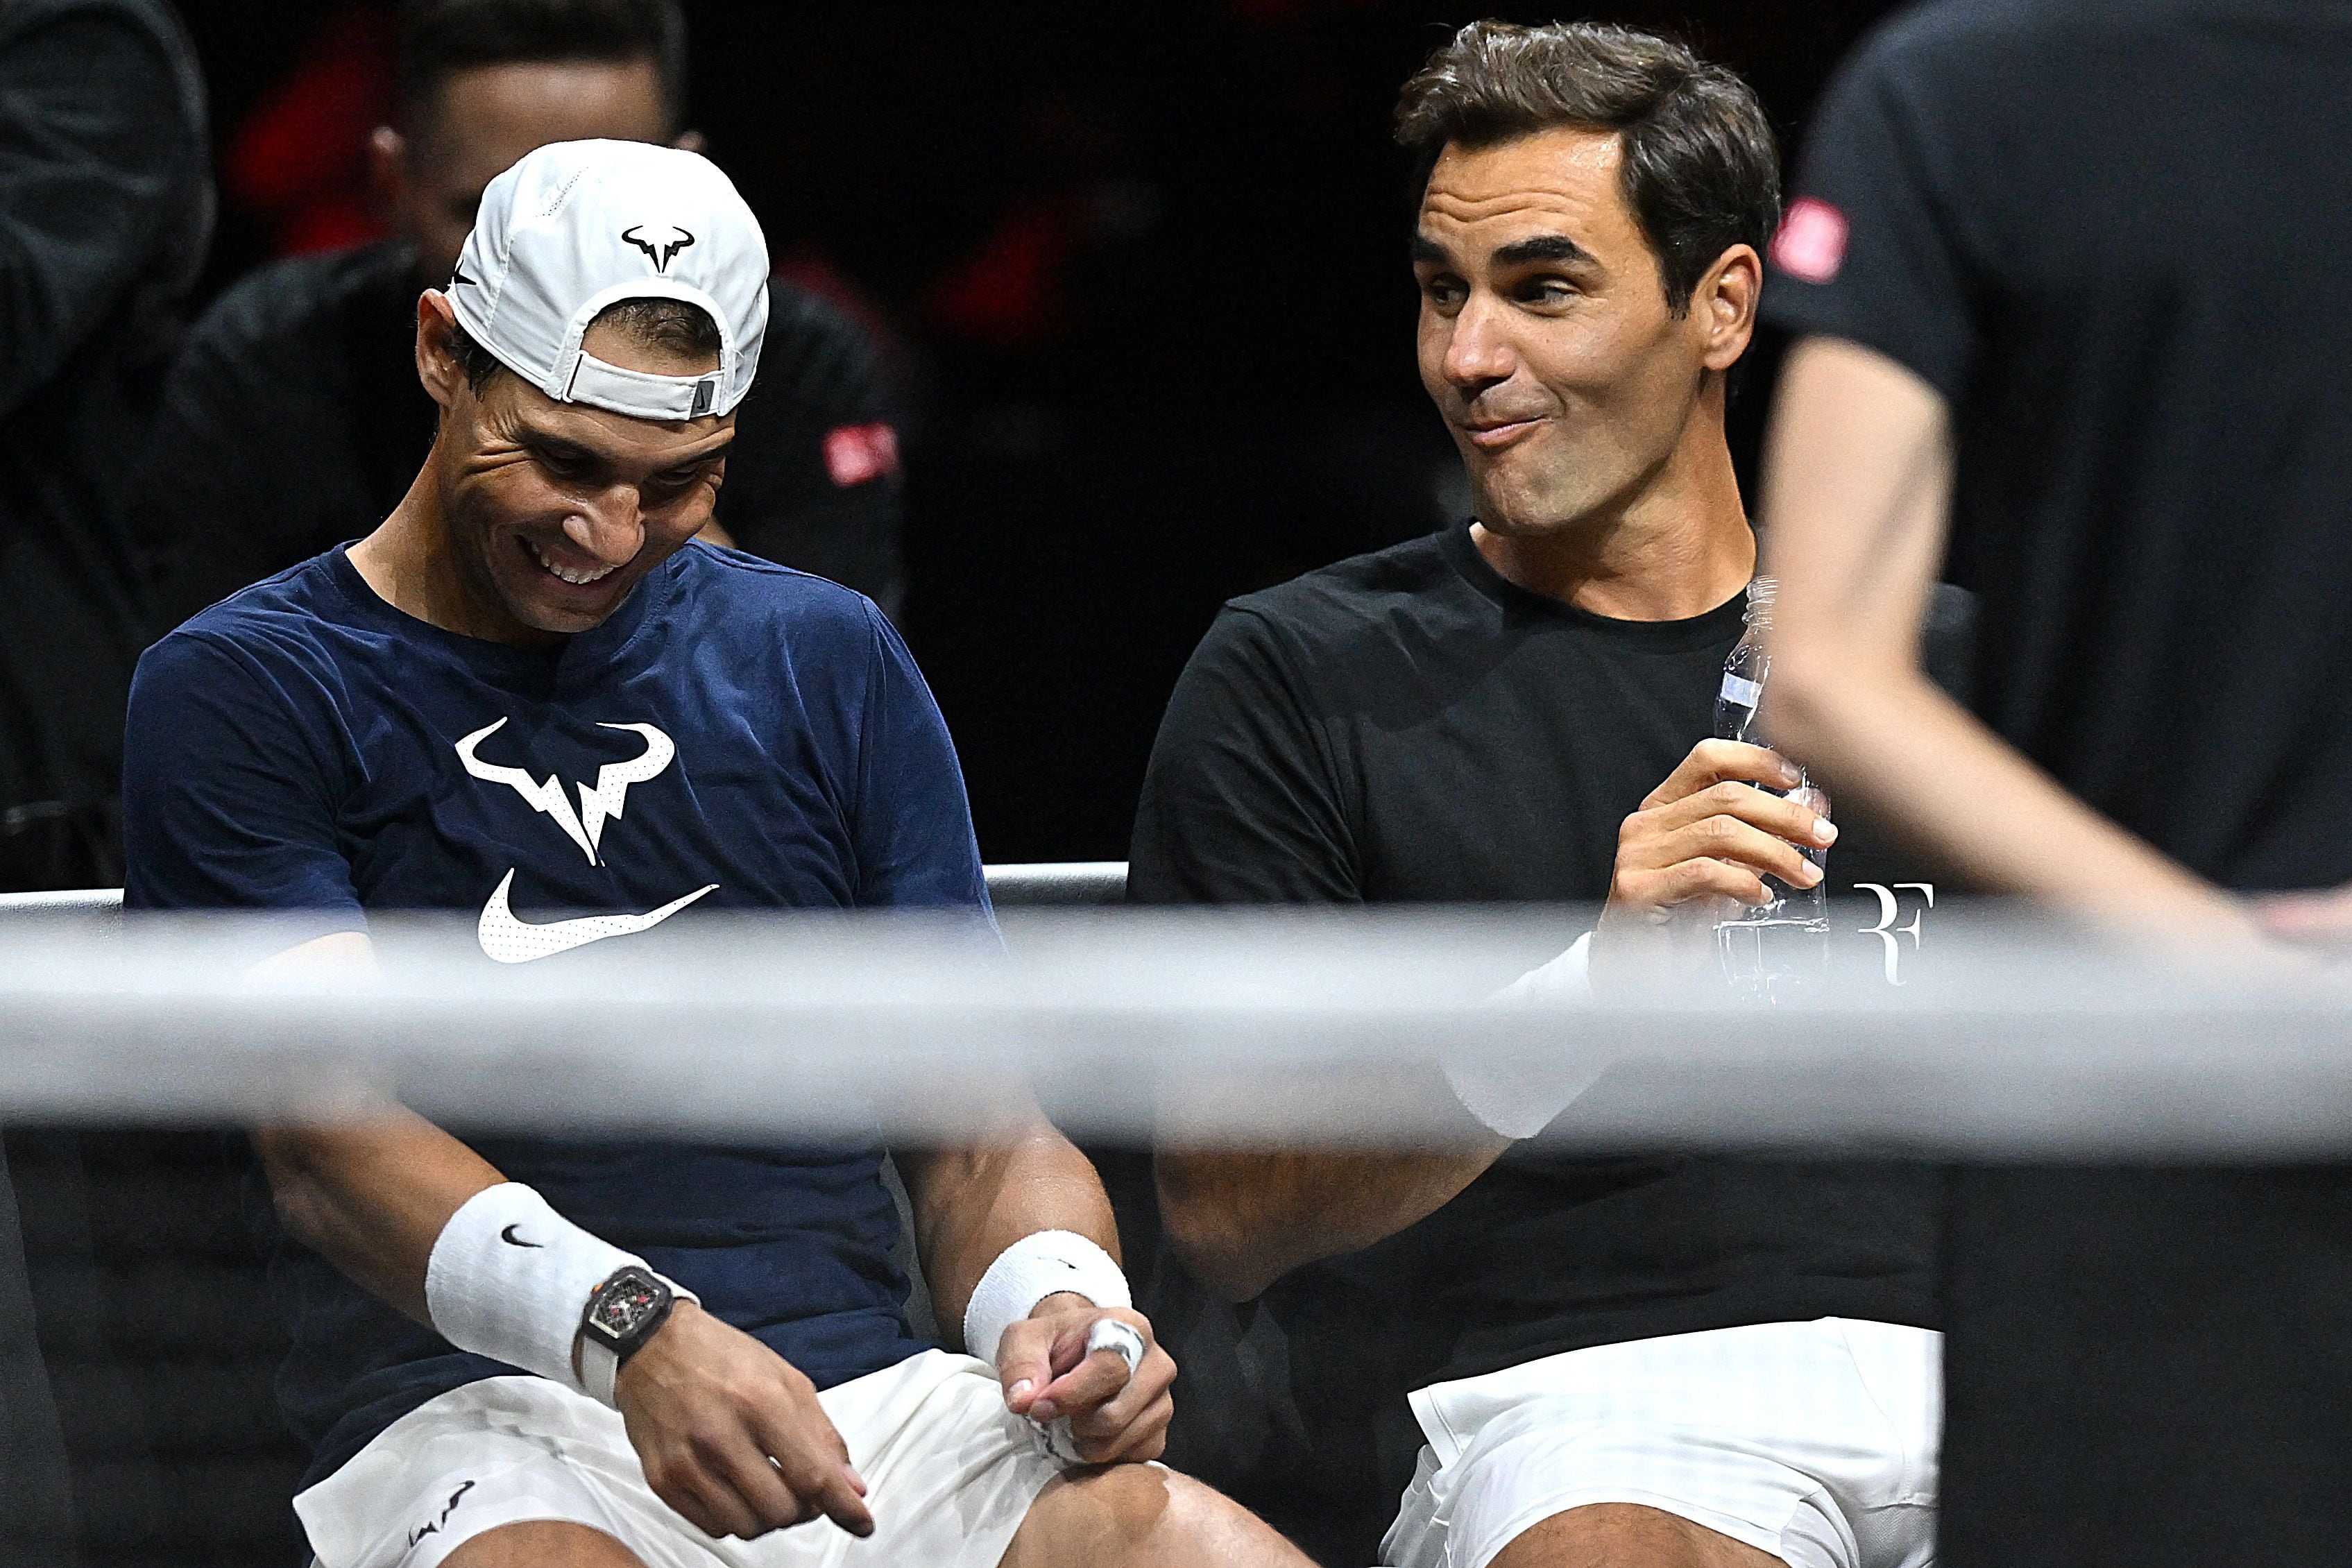 La ‘última oportunidad’ de Federer y Nadal juntos va a ser ‘superespecial’